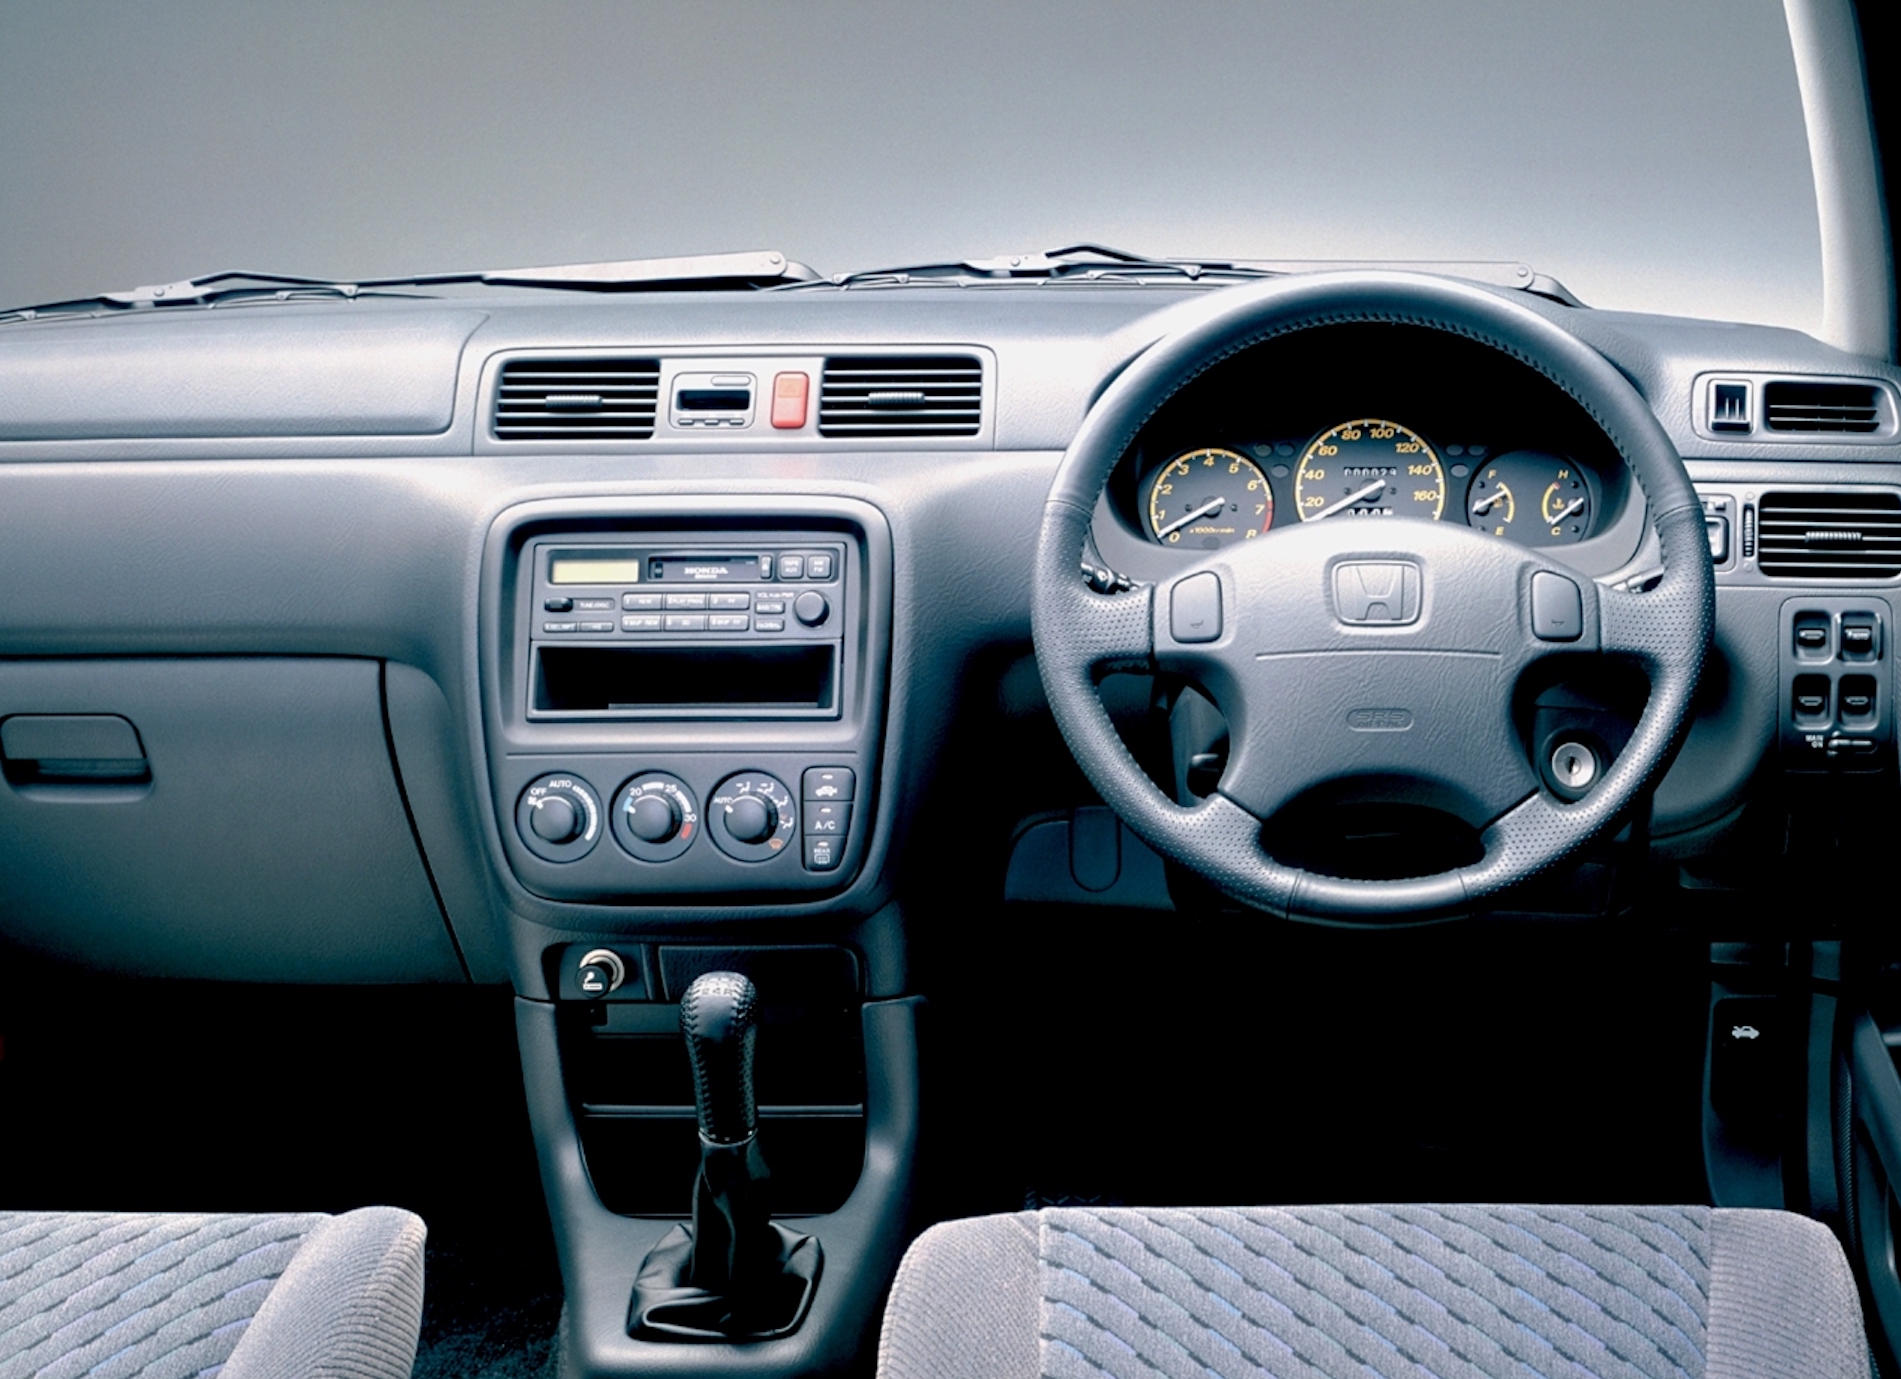 Crv 1 поколения. Honda CR-V 1995. Honda CR-V rd1 салон. Honda CR-V rd1 2001. Хонда СРВ 1 поколения салон.